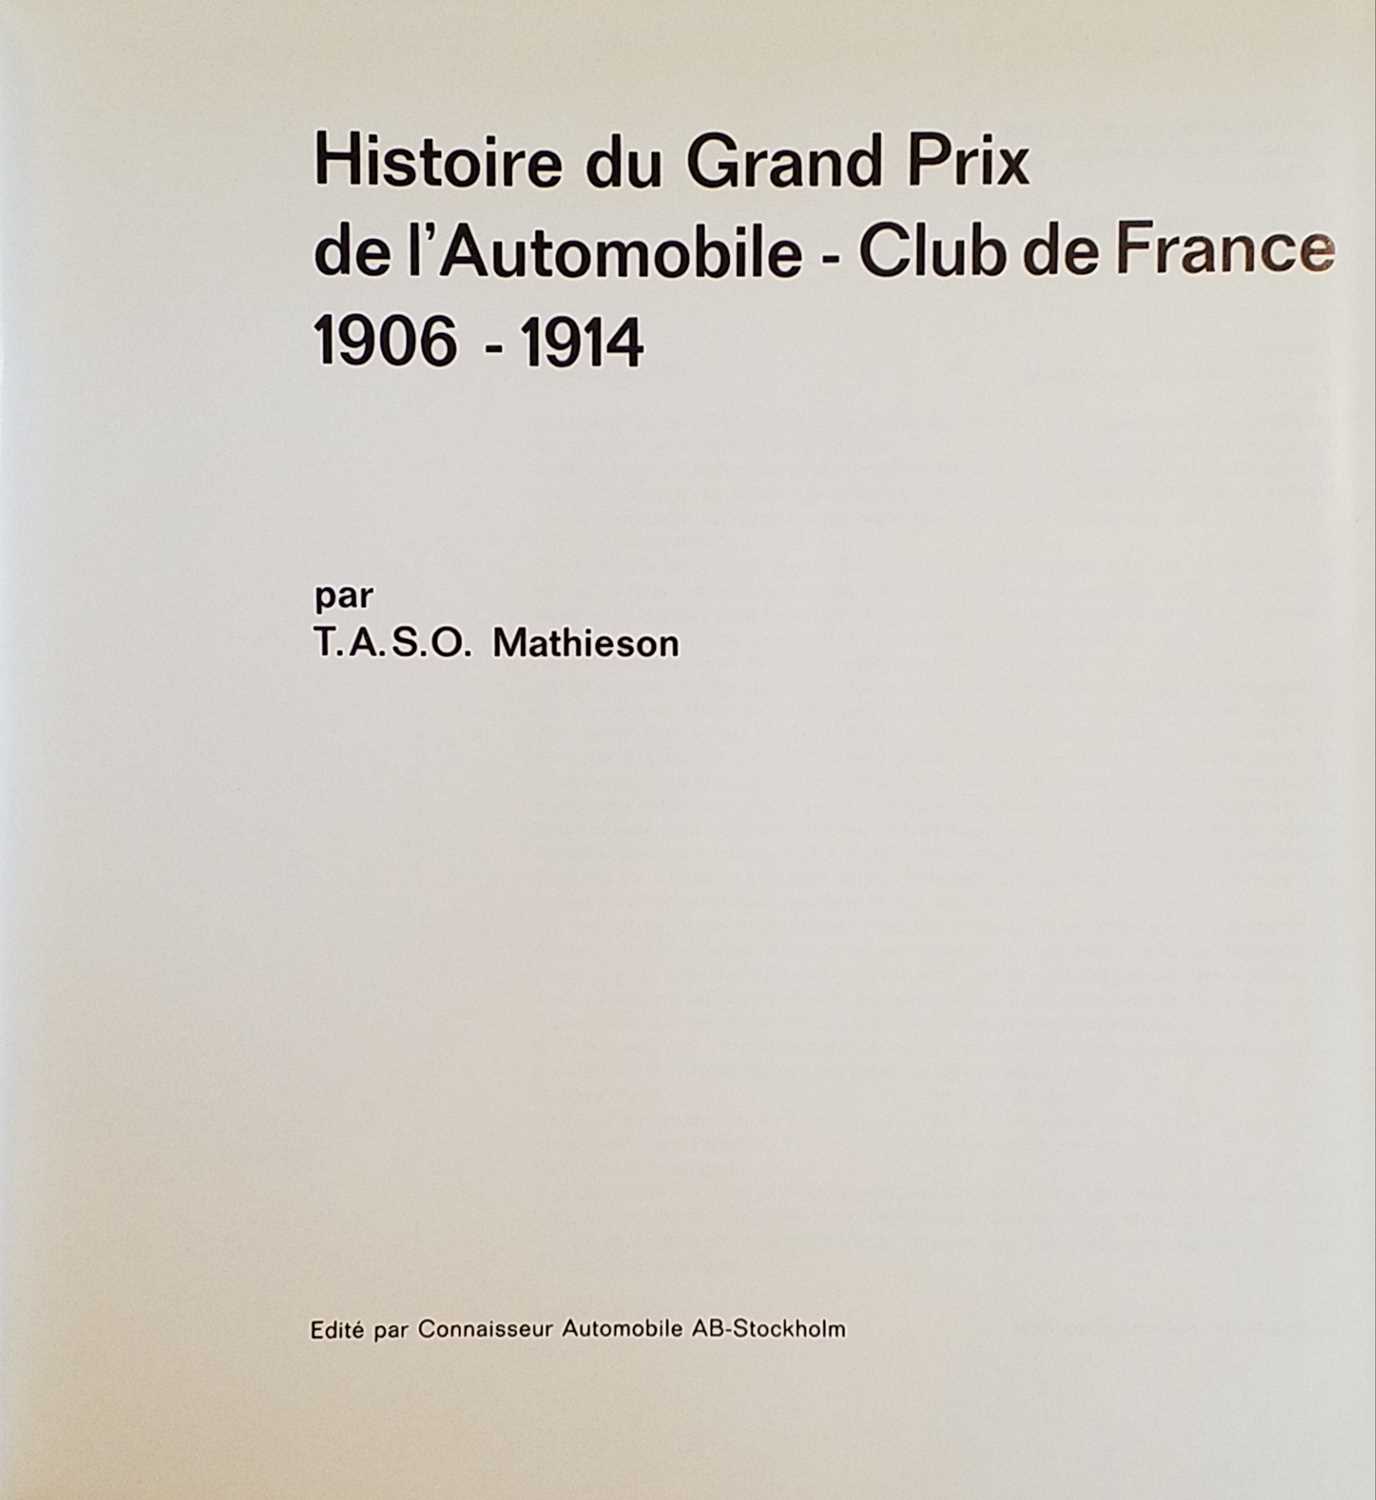 Lot 320 - Mathieson (T. A. S. O.). Histoire du Grand Prix de l'Automobile - Club de France 906-1914, Stockholm: Connaisseur Automobile, 1965